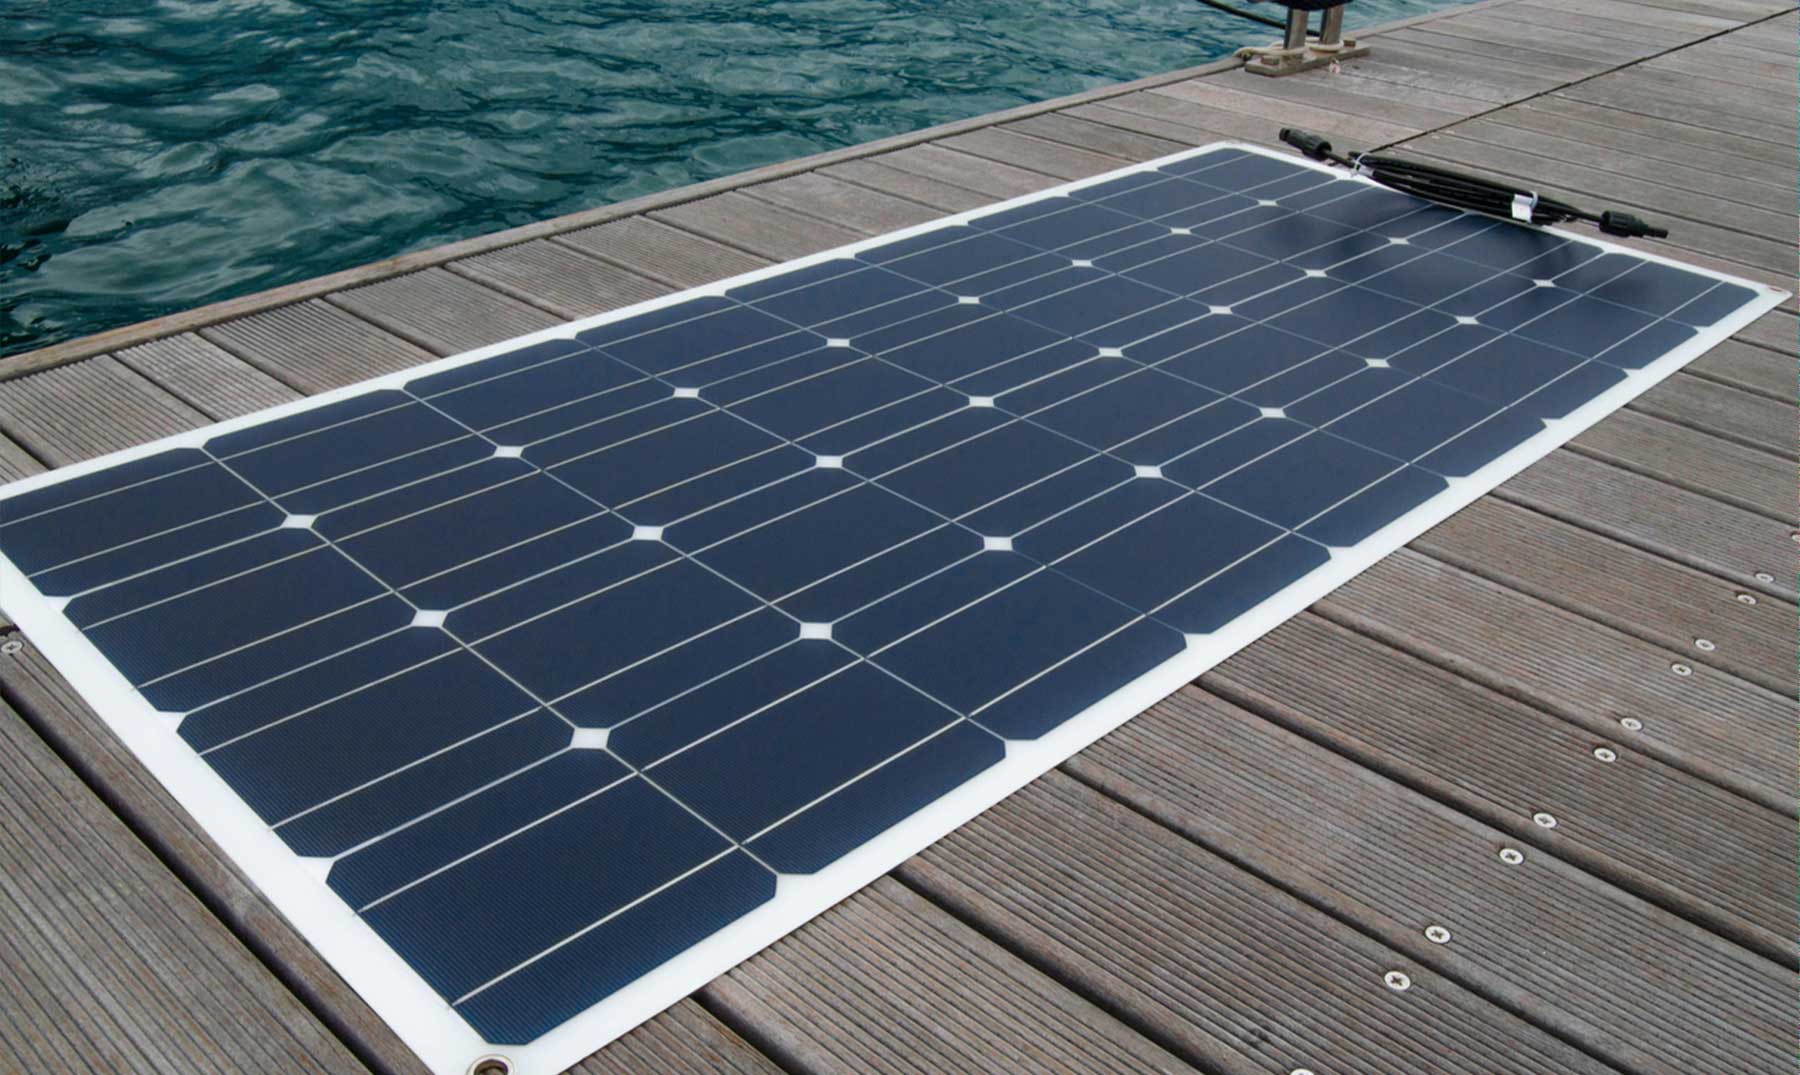 10 puntos importantes sobre el panel solar flexible